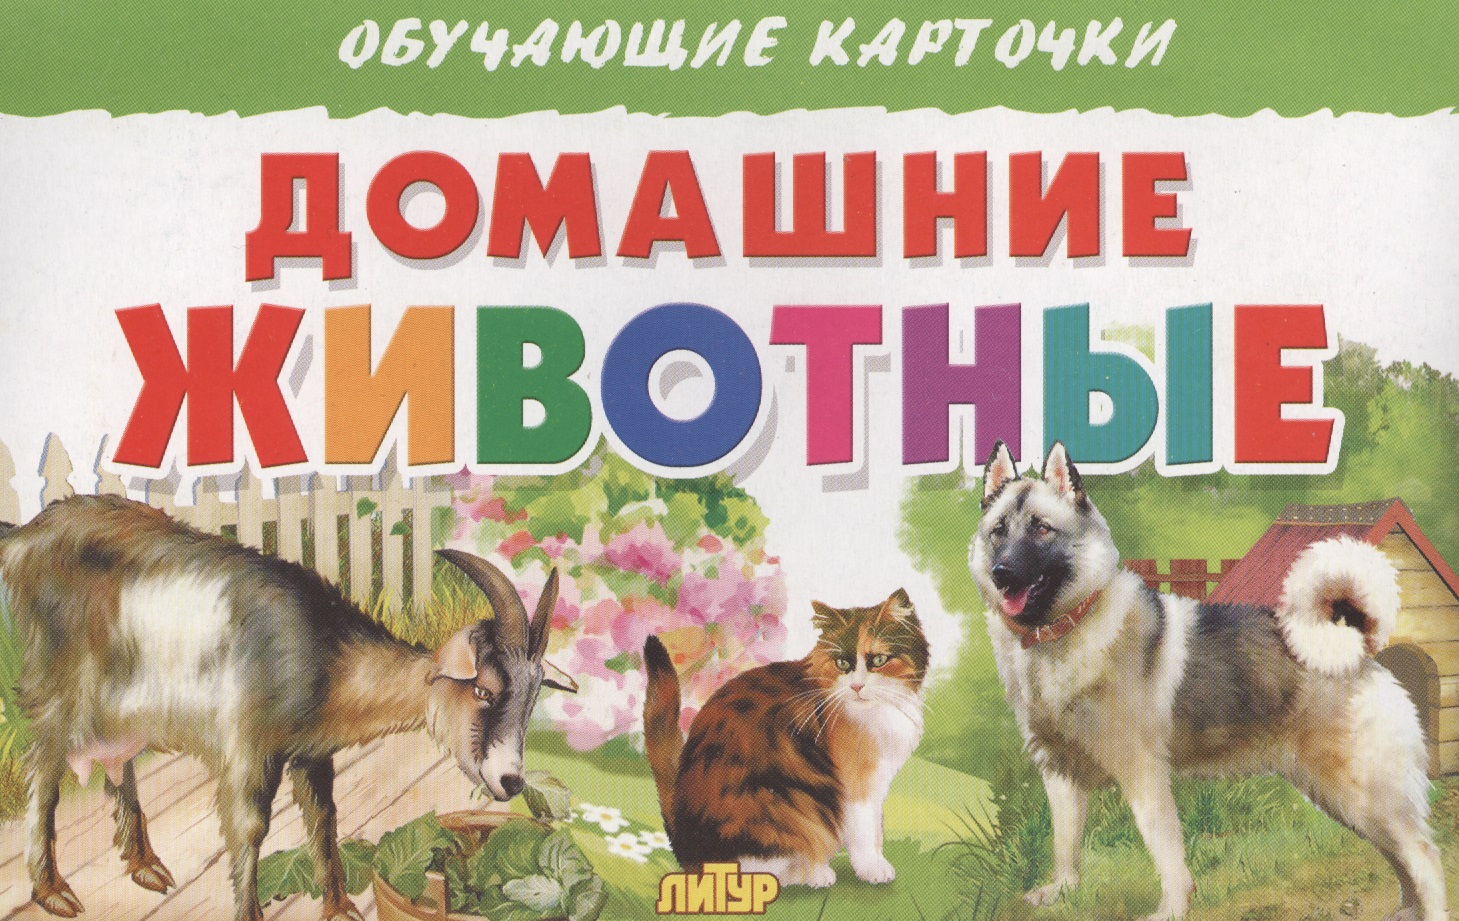 Обучающие карточки Домашние животные "Литур"